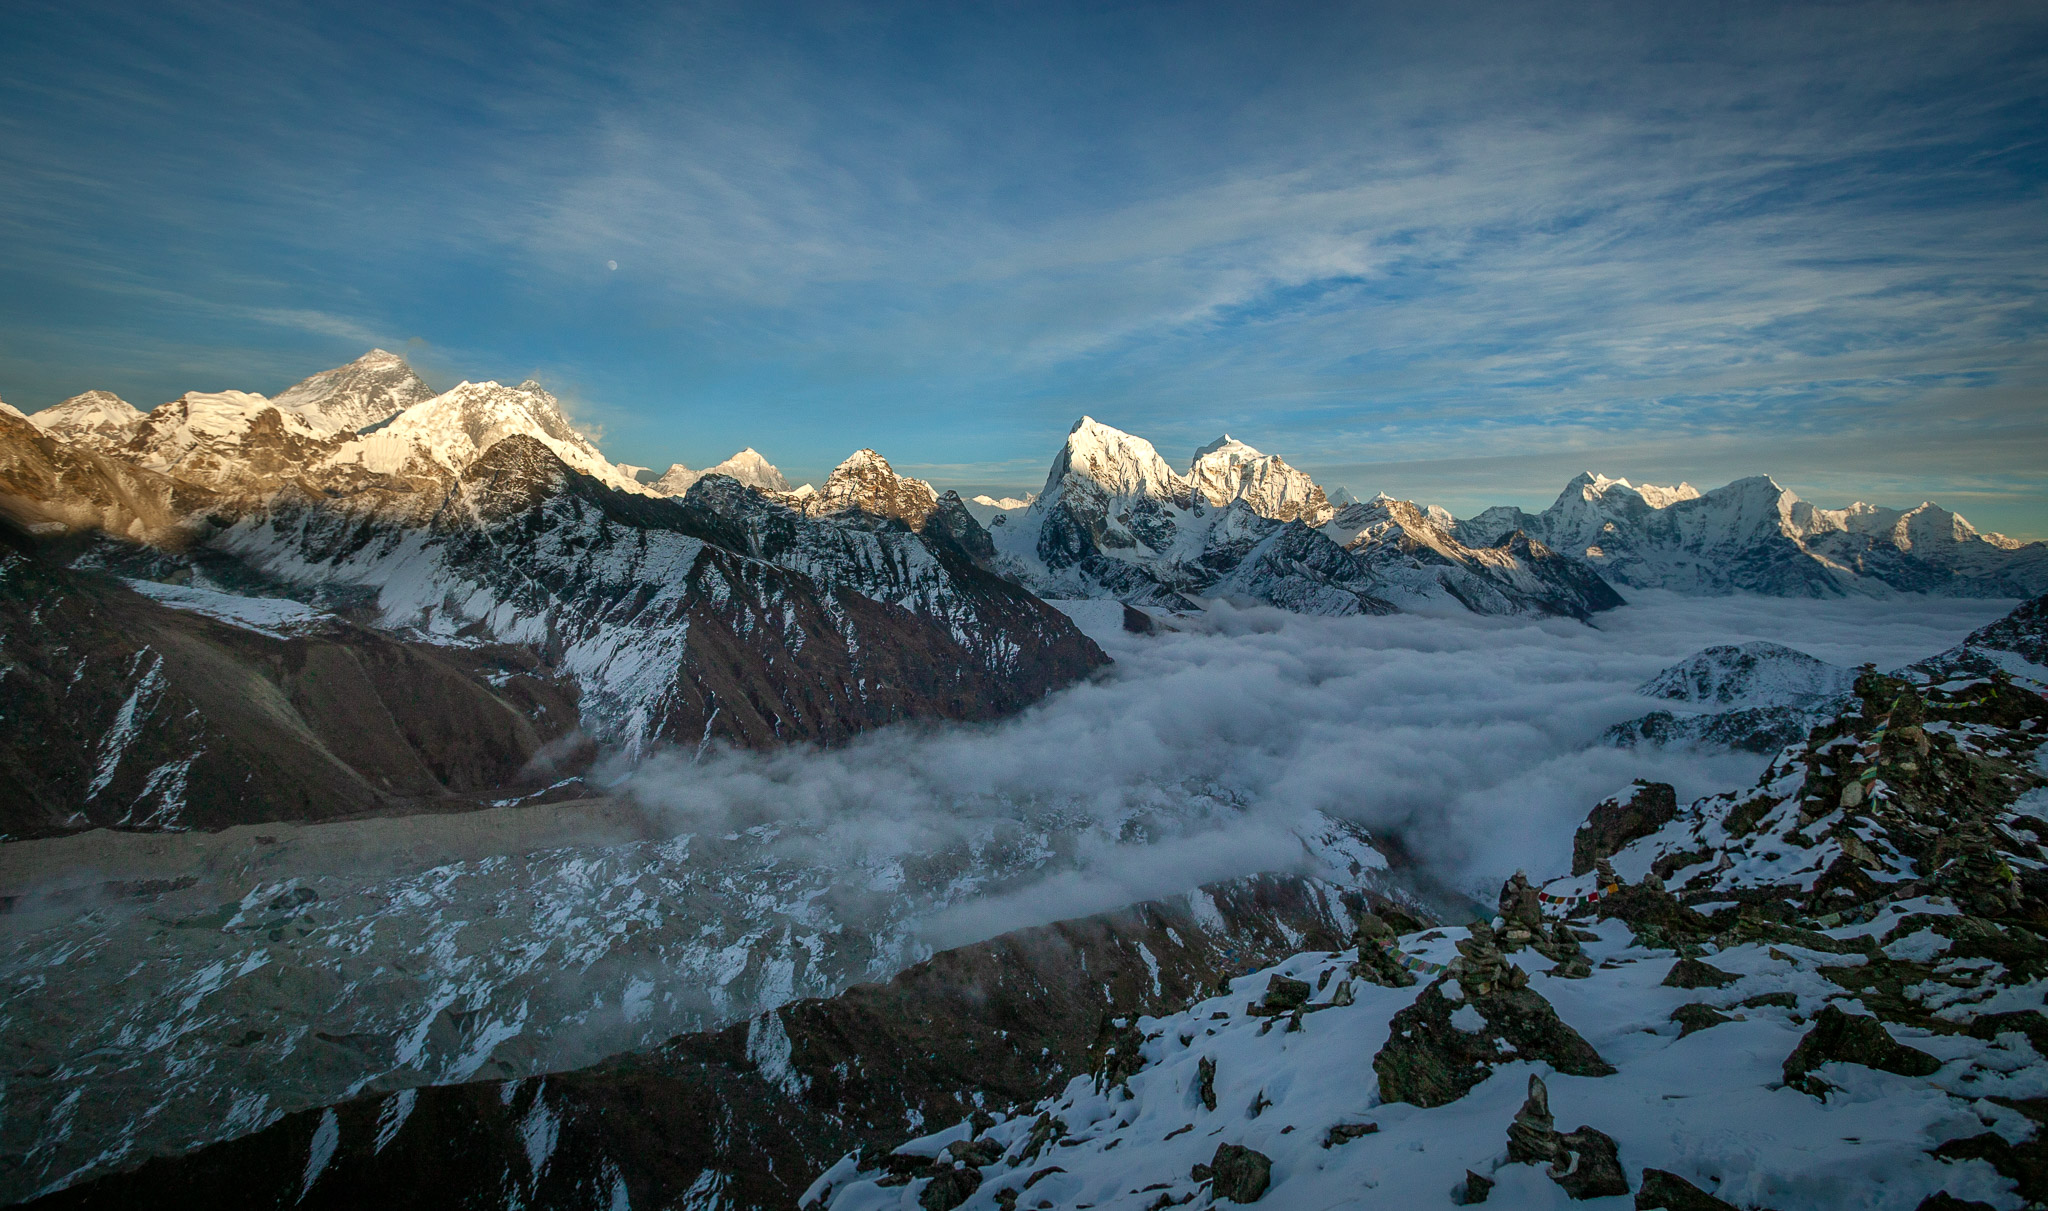 Last light on Everest & Cholatse